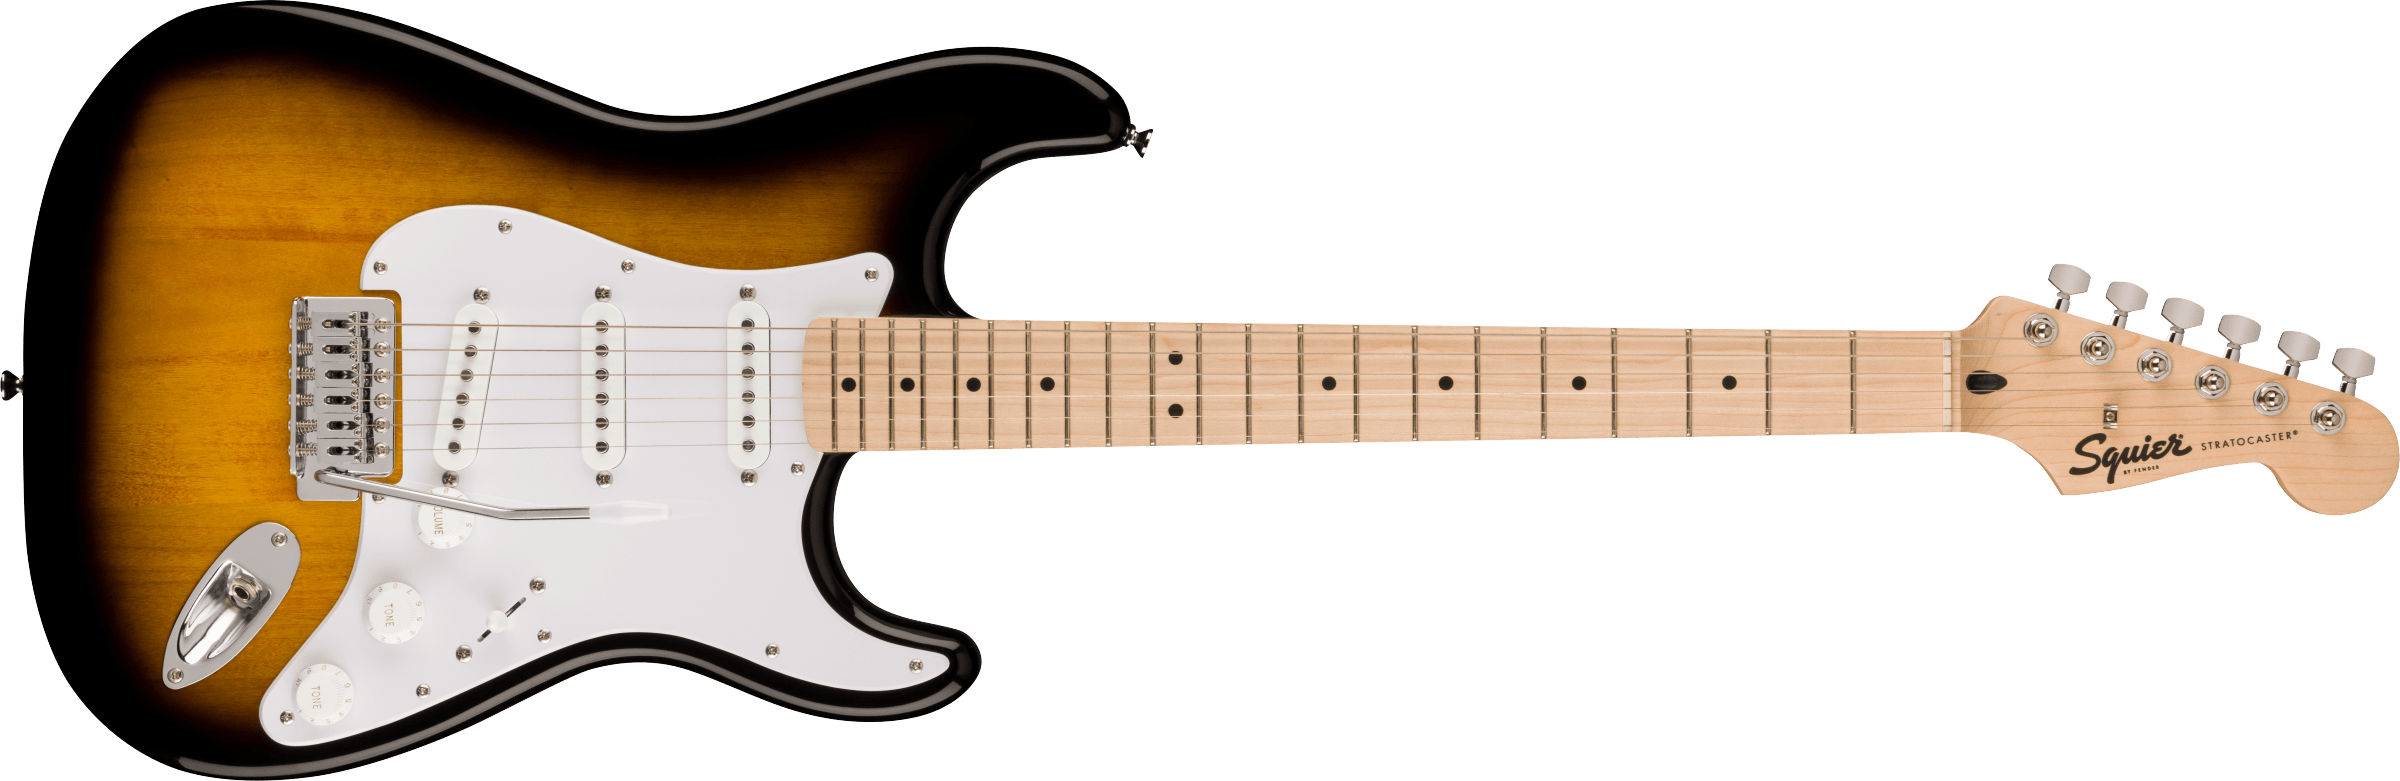 Billede af Fender Squier Sonic Stratocaster El-guitar (Sunburst)